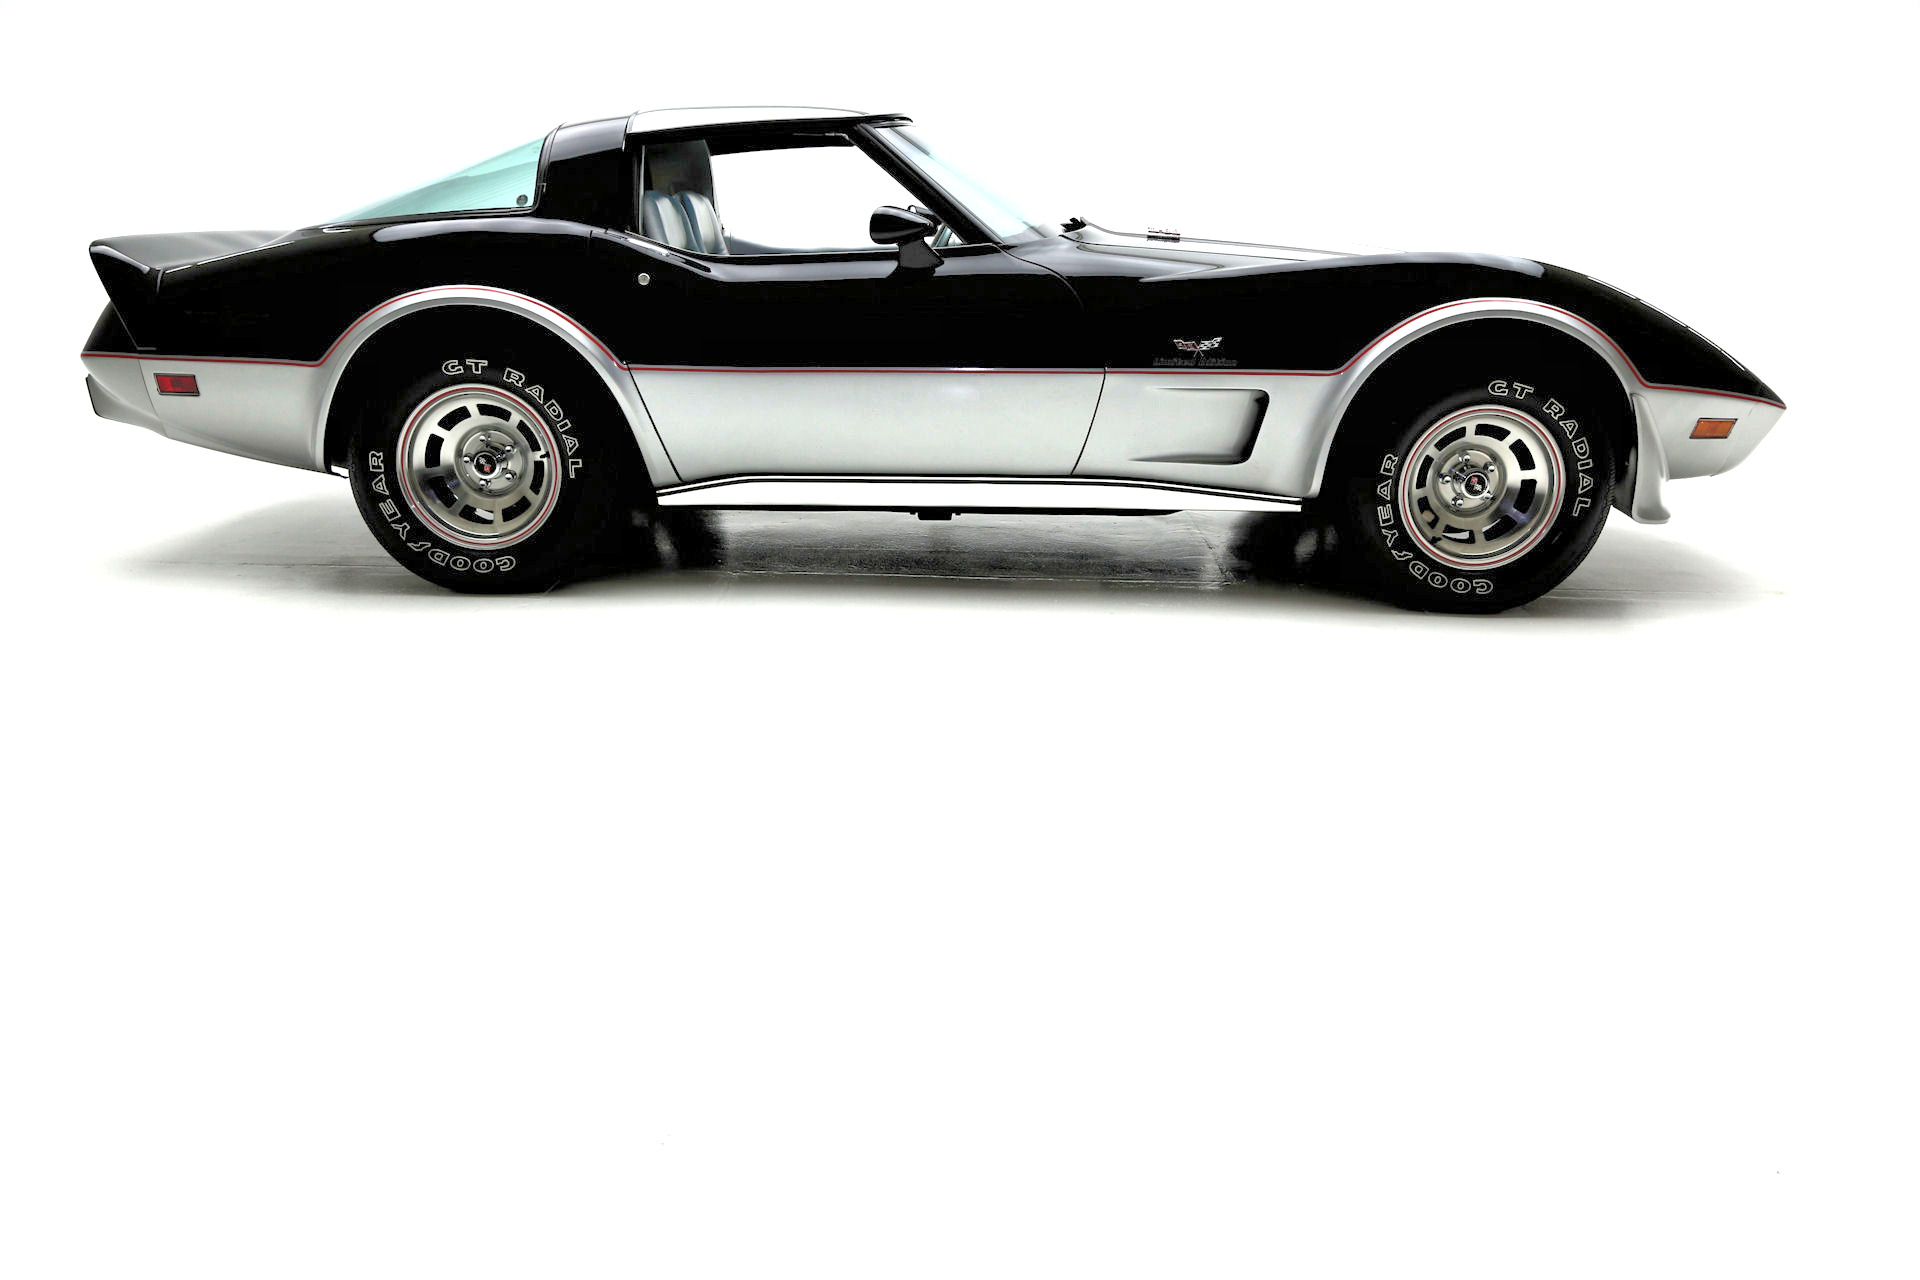 For Sale Used 1978 Chevrolet Corvette Ltd Edt L82, 7031 miles | American Dream Machines Des Moines IA 50309